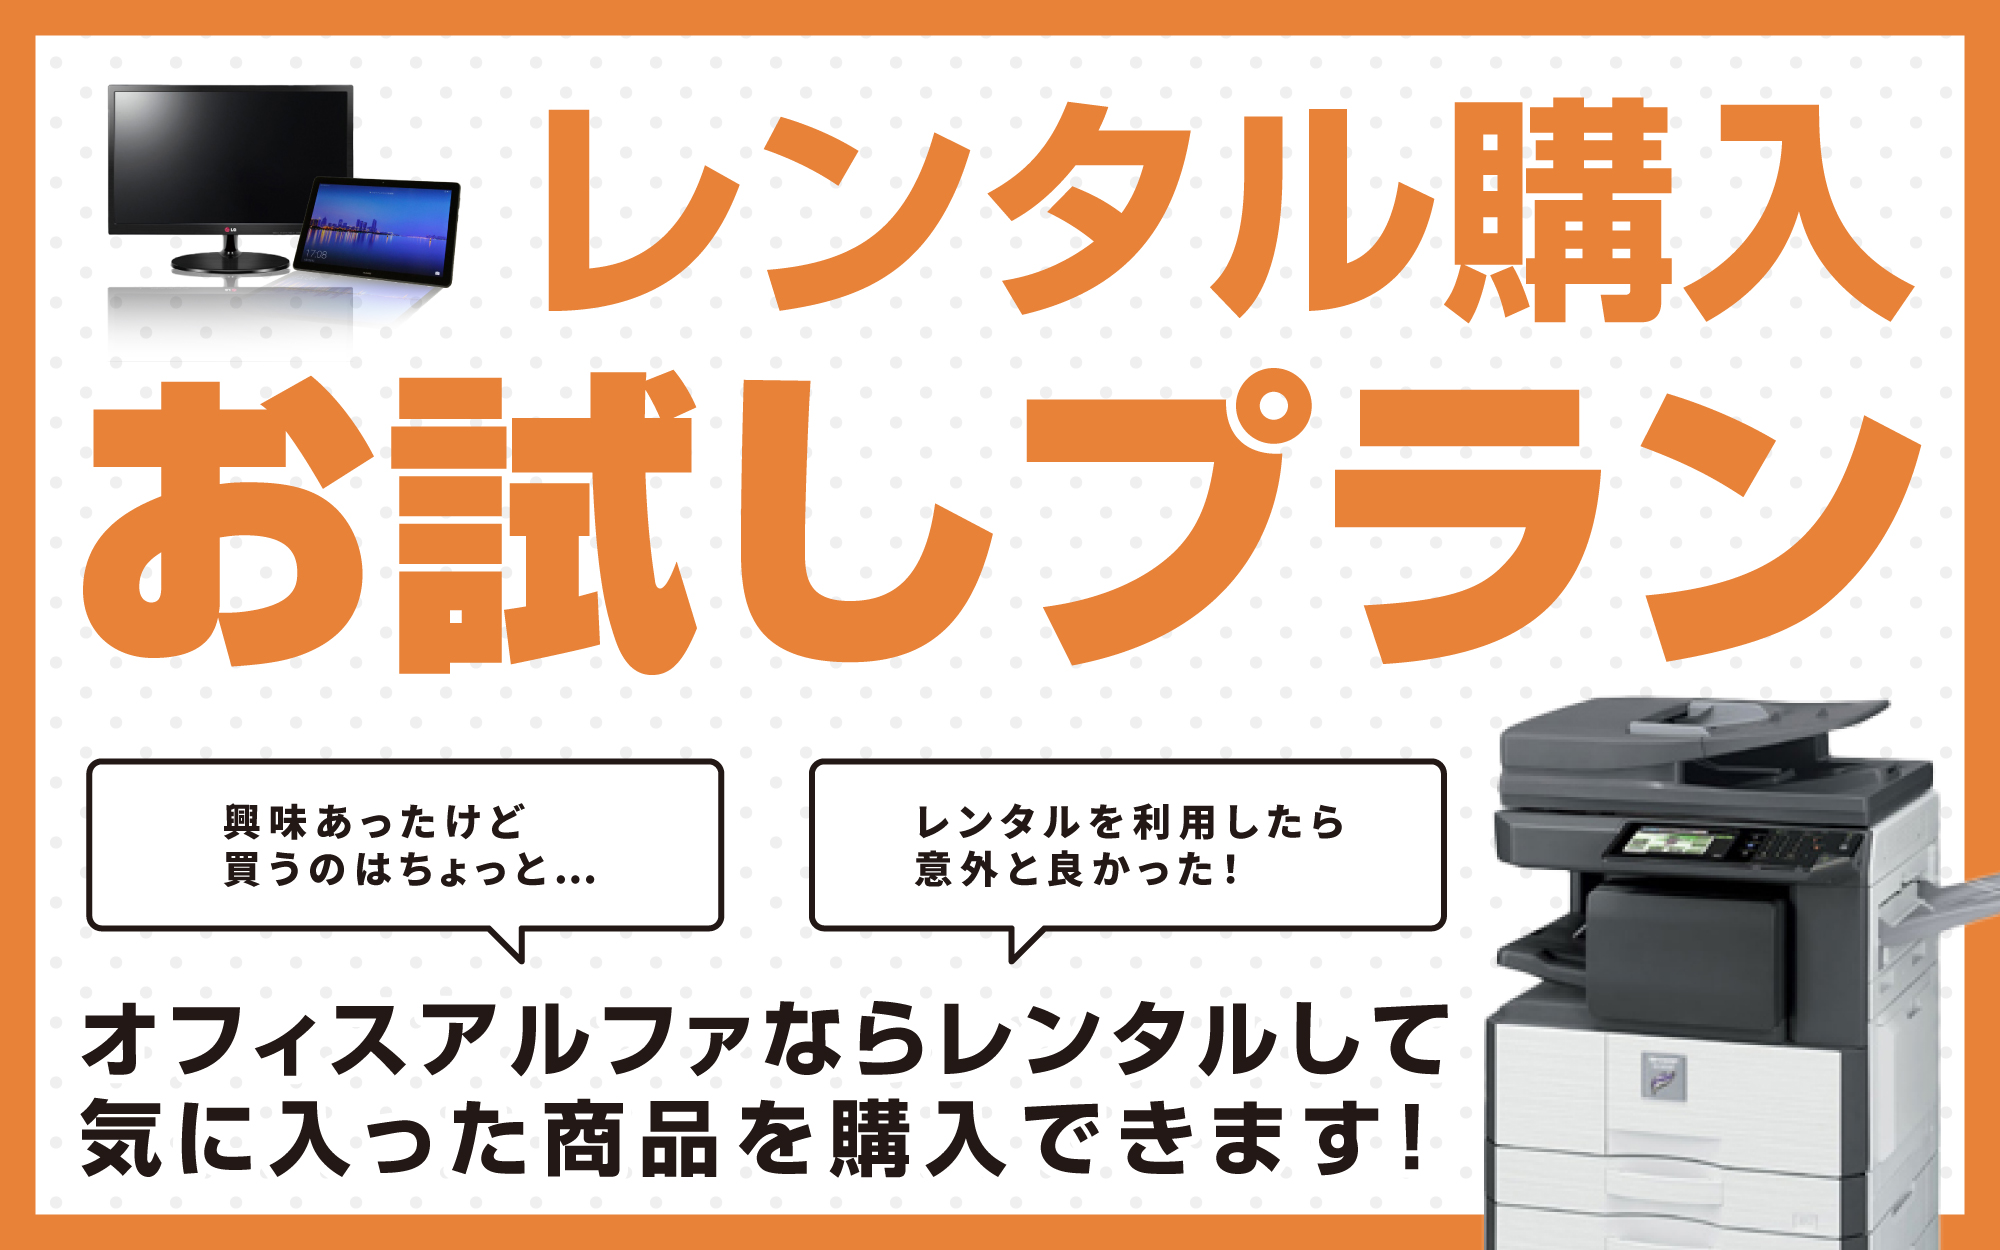 日本全国 送料無料 エプソン A3対応 モノクロページプリンター 無線LAN対応 モノクロレーザープリンター LP-S2290